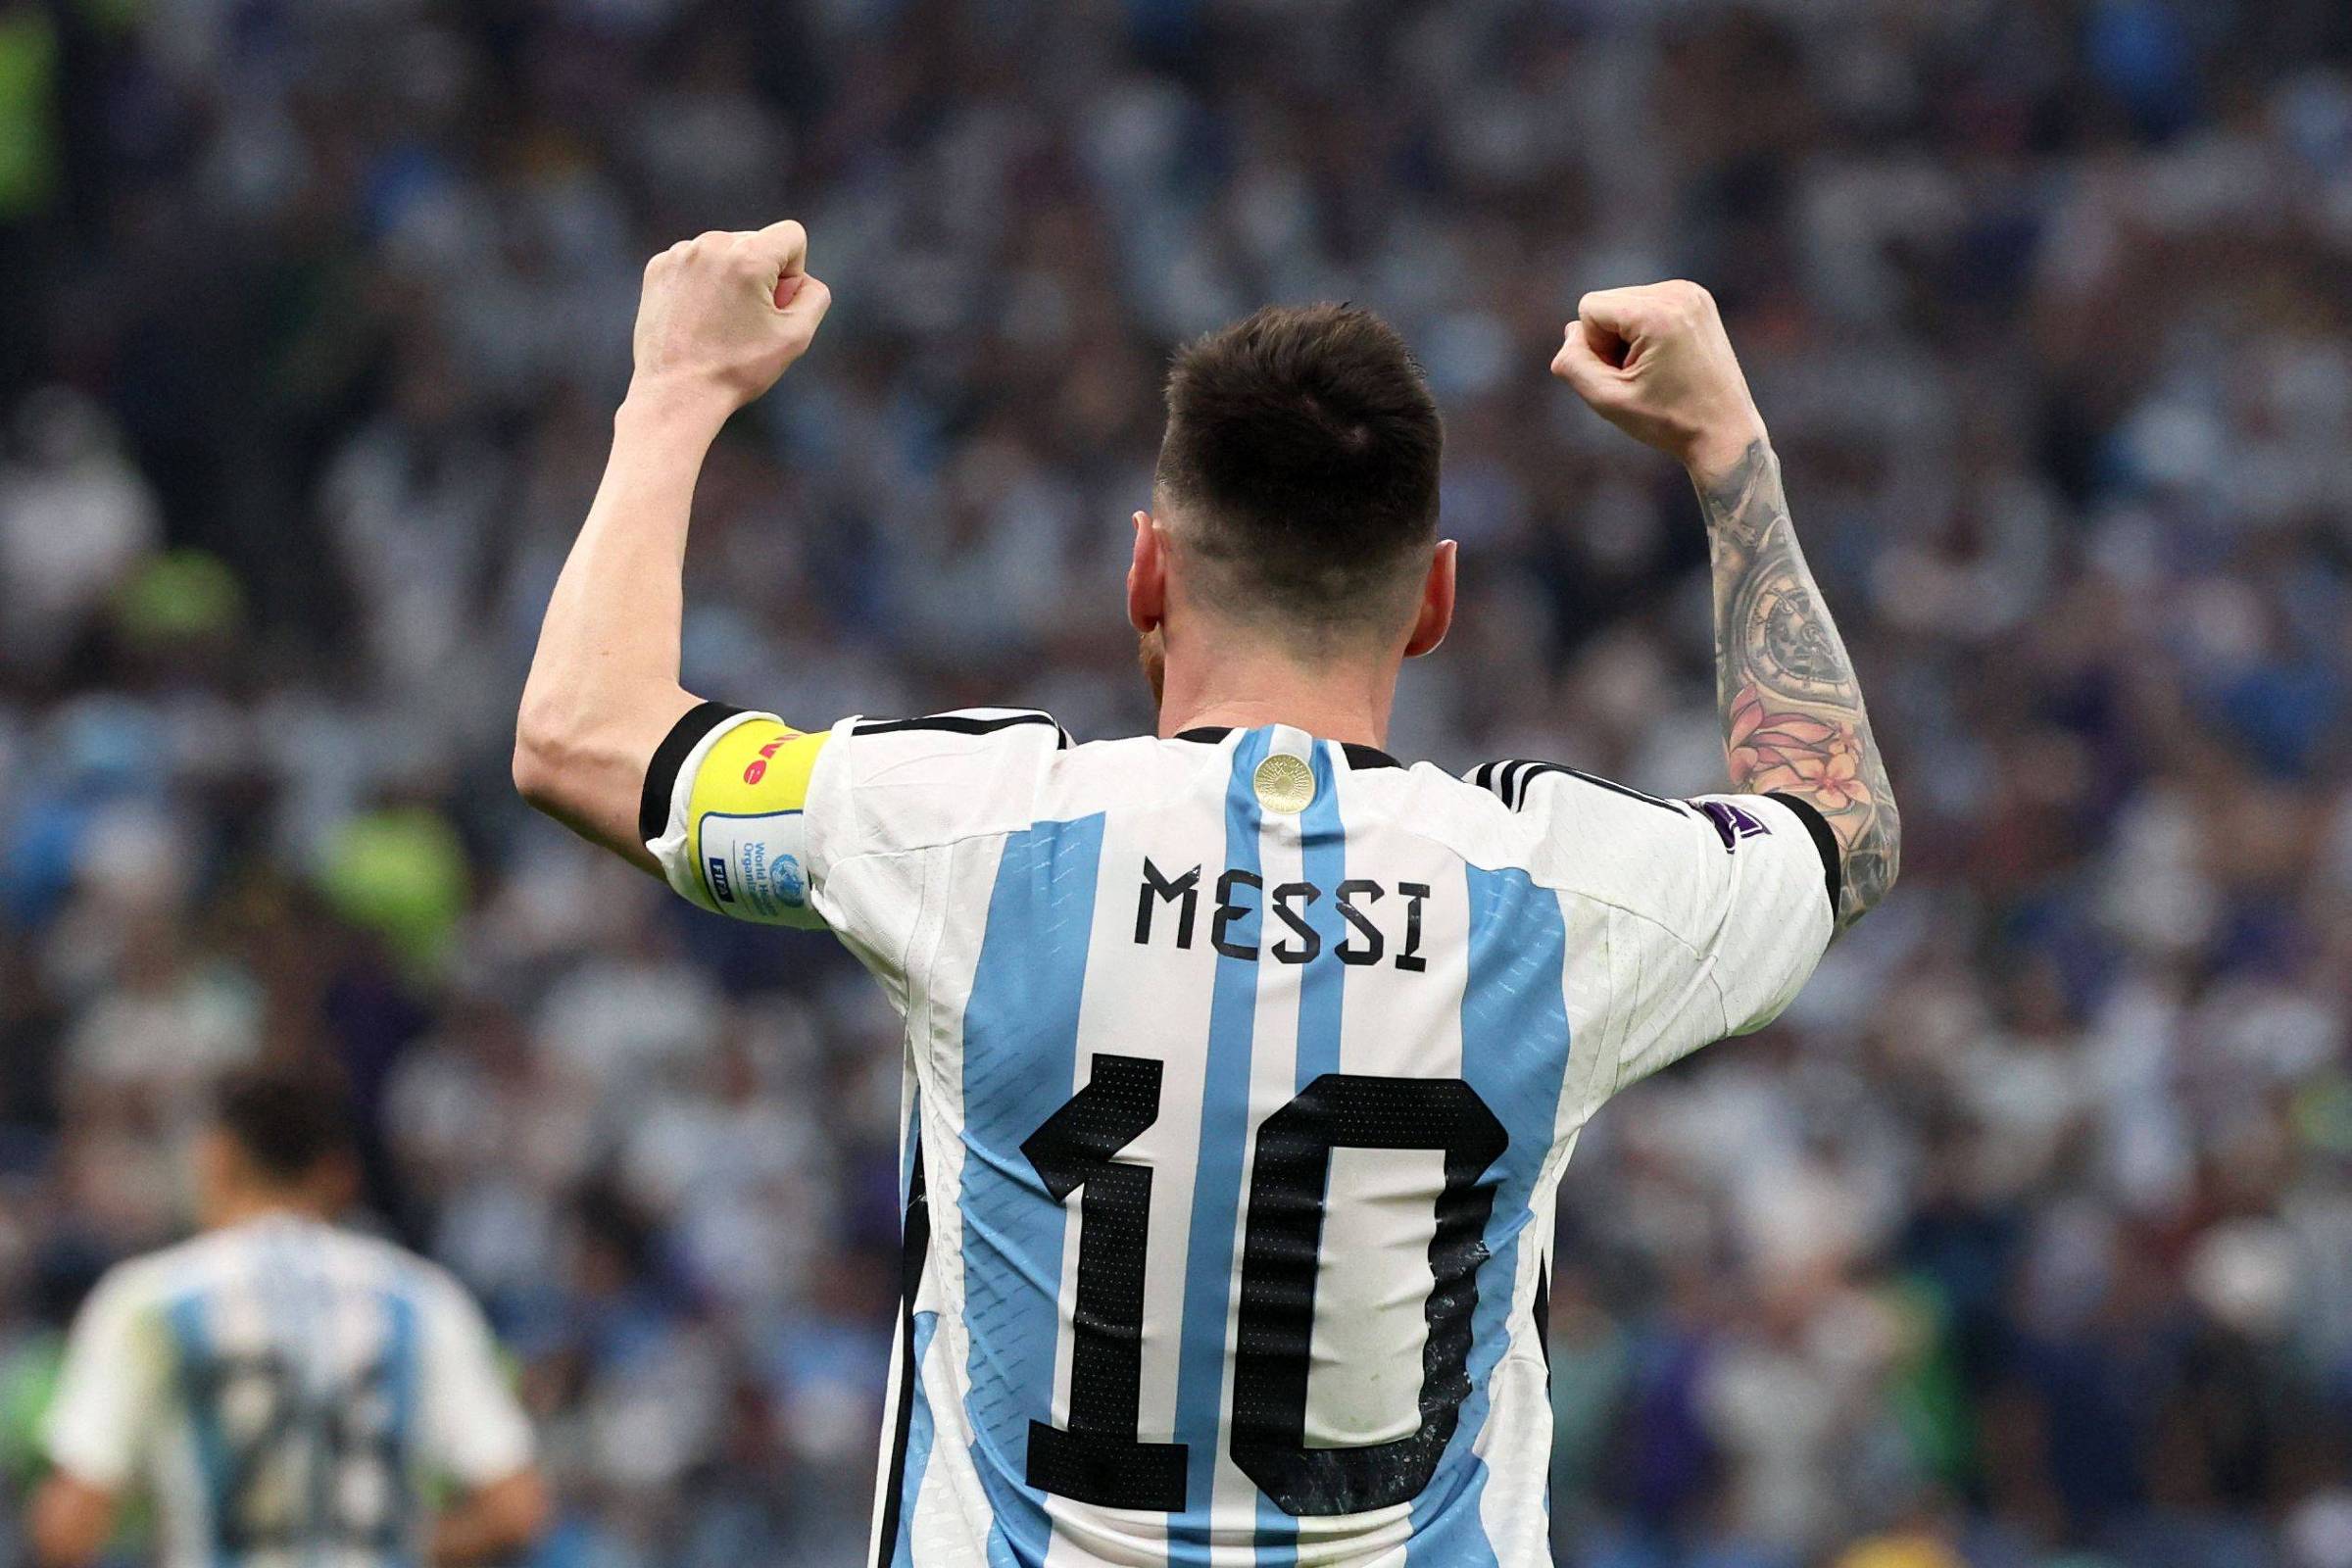 Messi enterra fantasma e é o maior jogador de futebol deste século -  18/12/2022 - UOL Esporte